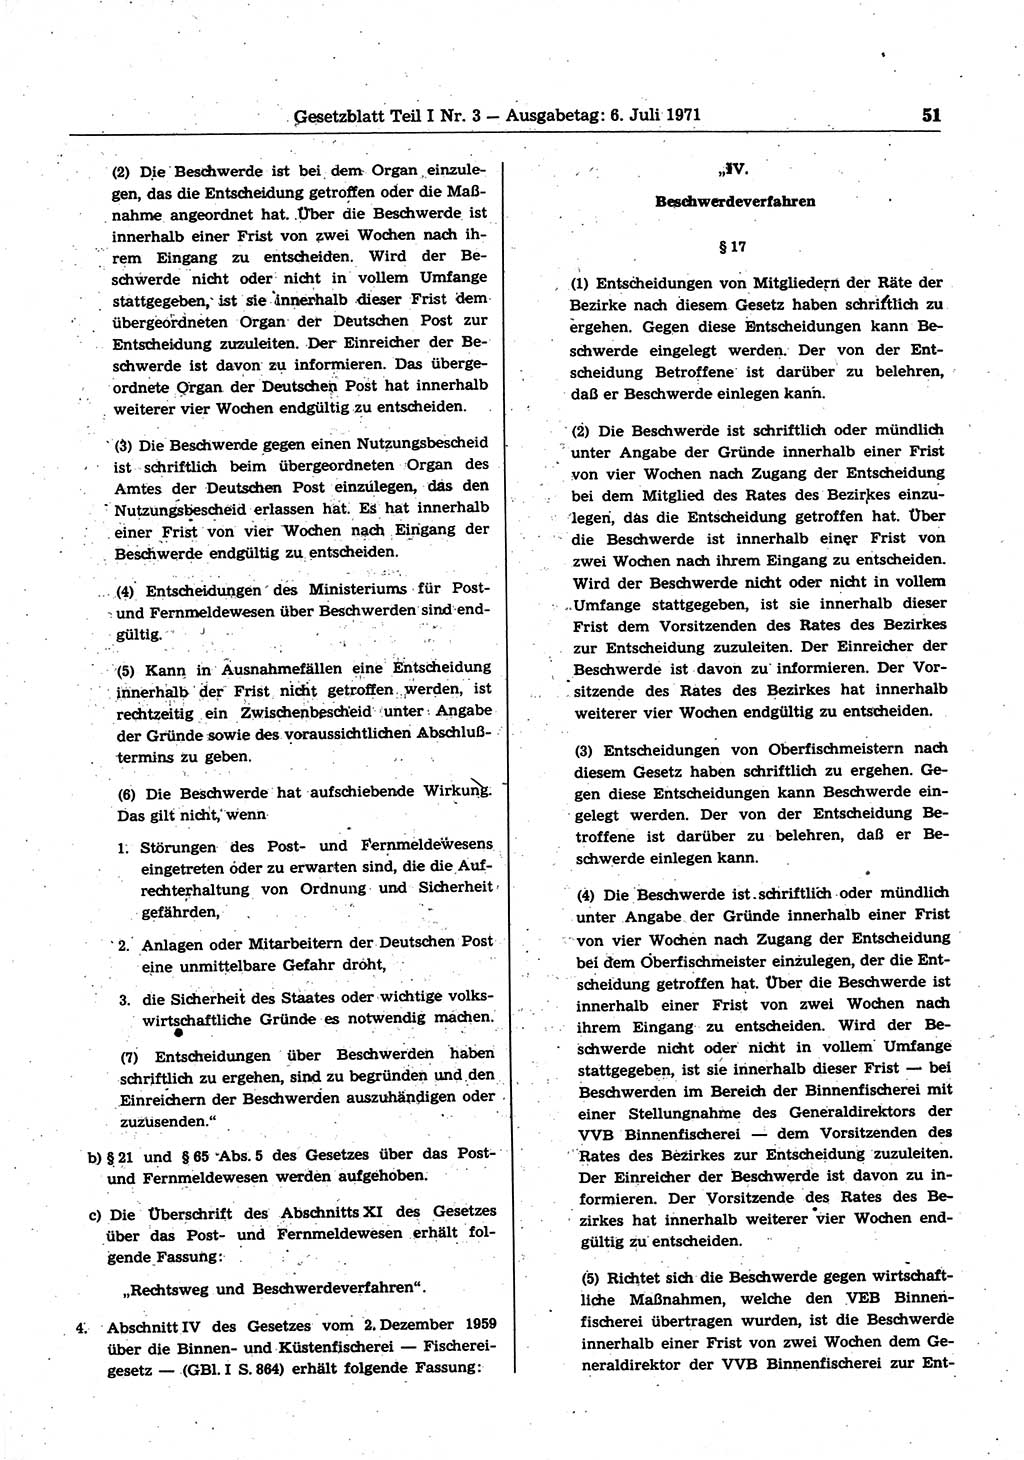 Gesetzblatt (GBl.) der Deutschen Demokratischen Republik (DDR) Teil Ⅰ 1971, Seite 51 (GBl. DDR Ⅰ 1971, S. 51)